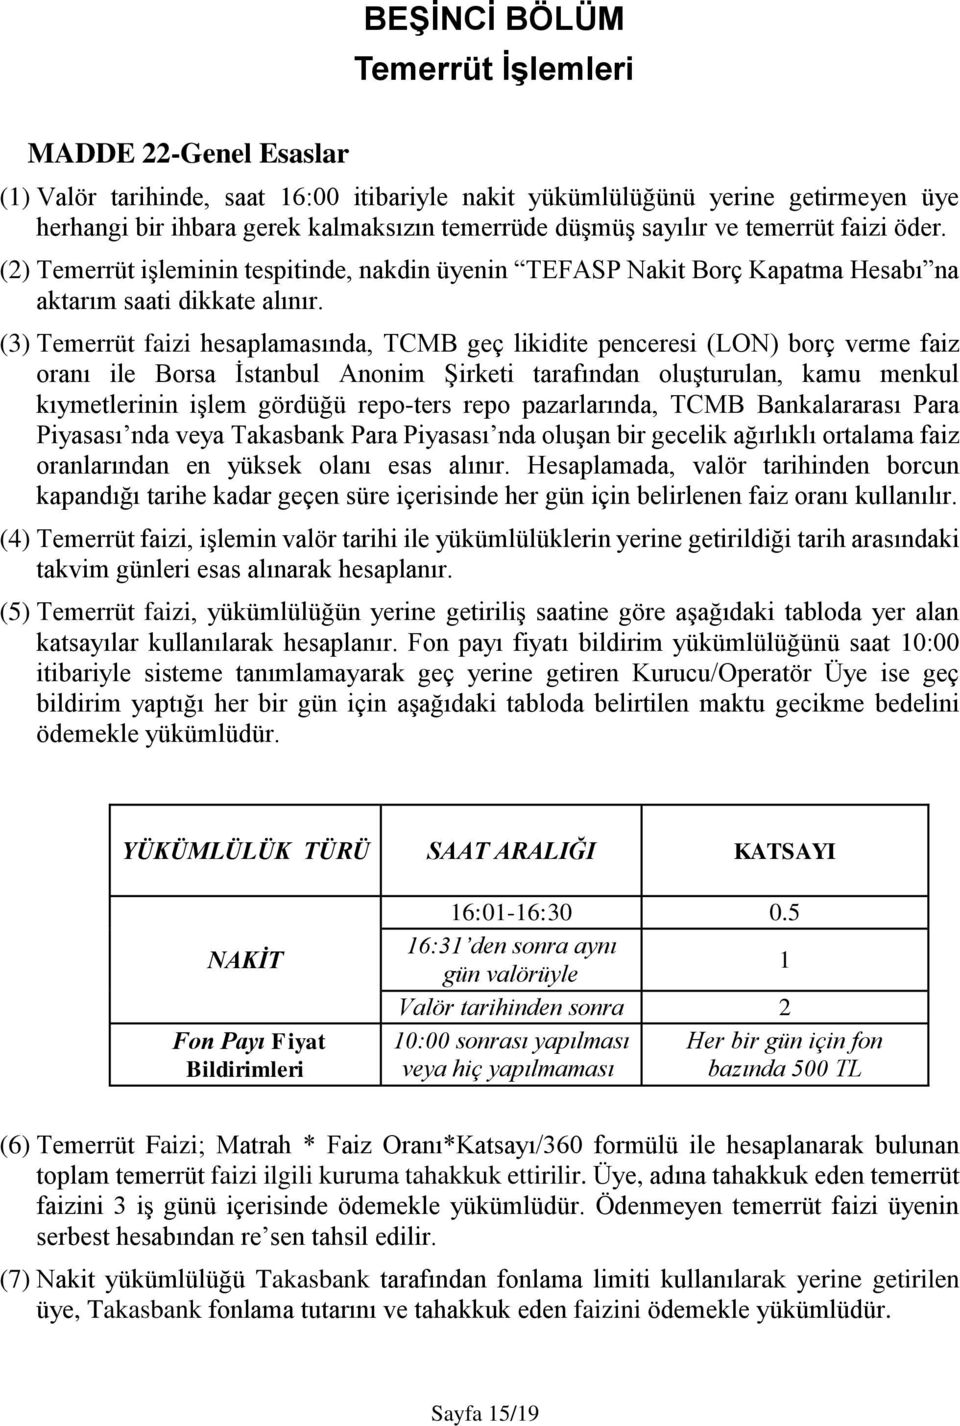 (3) Temerrüt faizi hesaplamasında, TCMB geç likidite penceresi (LON) borç verme faiz oranı ile Borsa İstanbul Anonim Şirketi tarafından oluşturulan, kamu menkul kıymetlerinin işlem gördüğü repo-ters